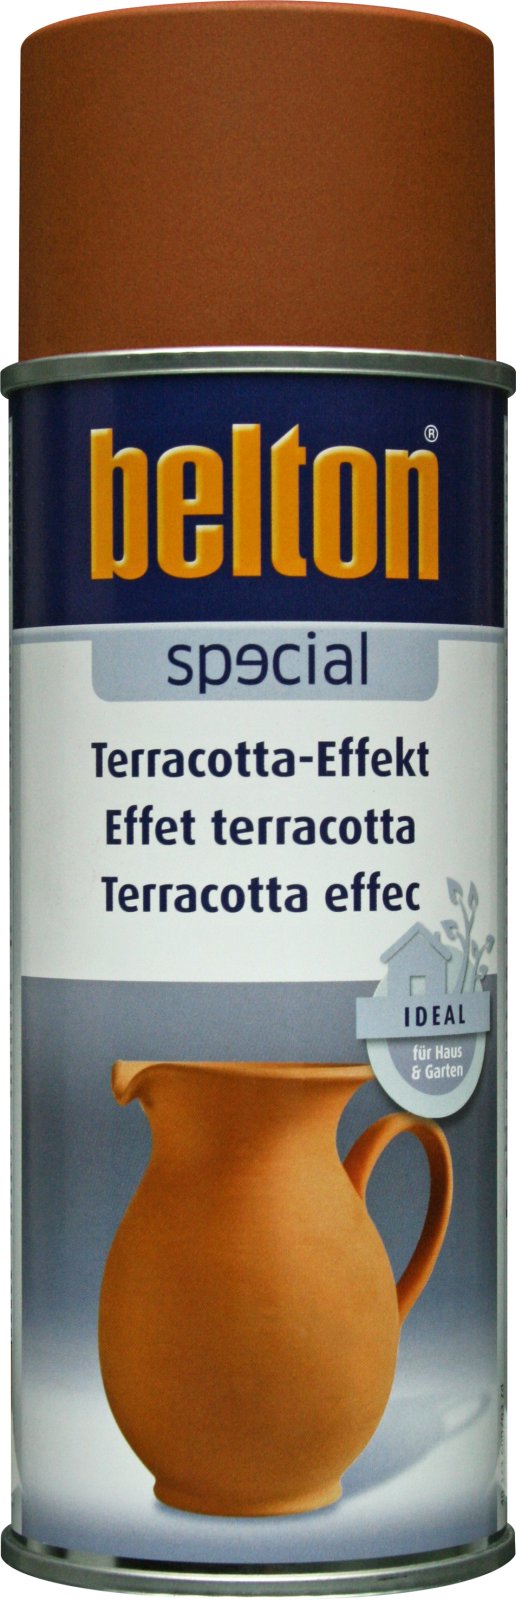 belton Terracotta-Effekt-Spray, manganbraun - 400ml